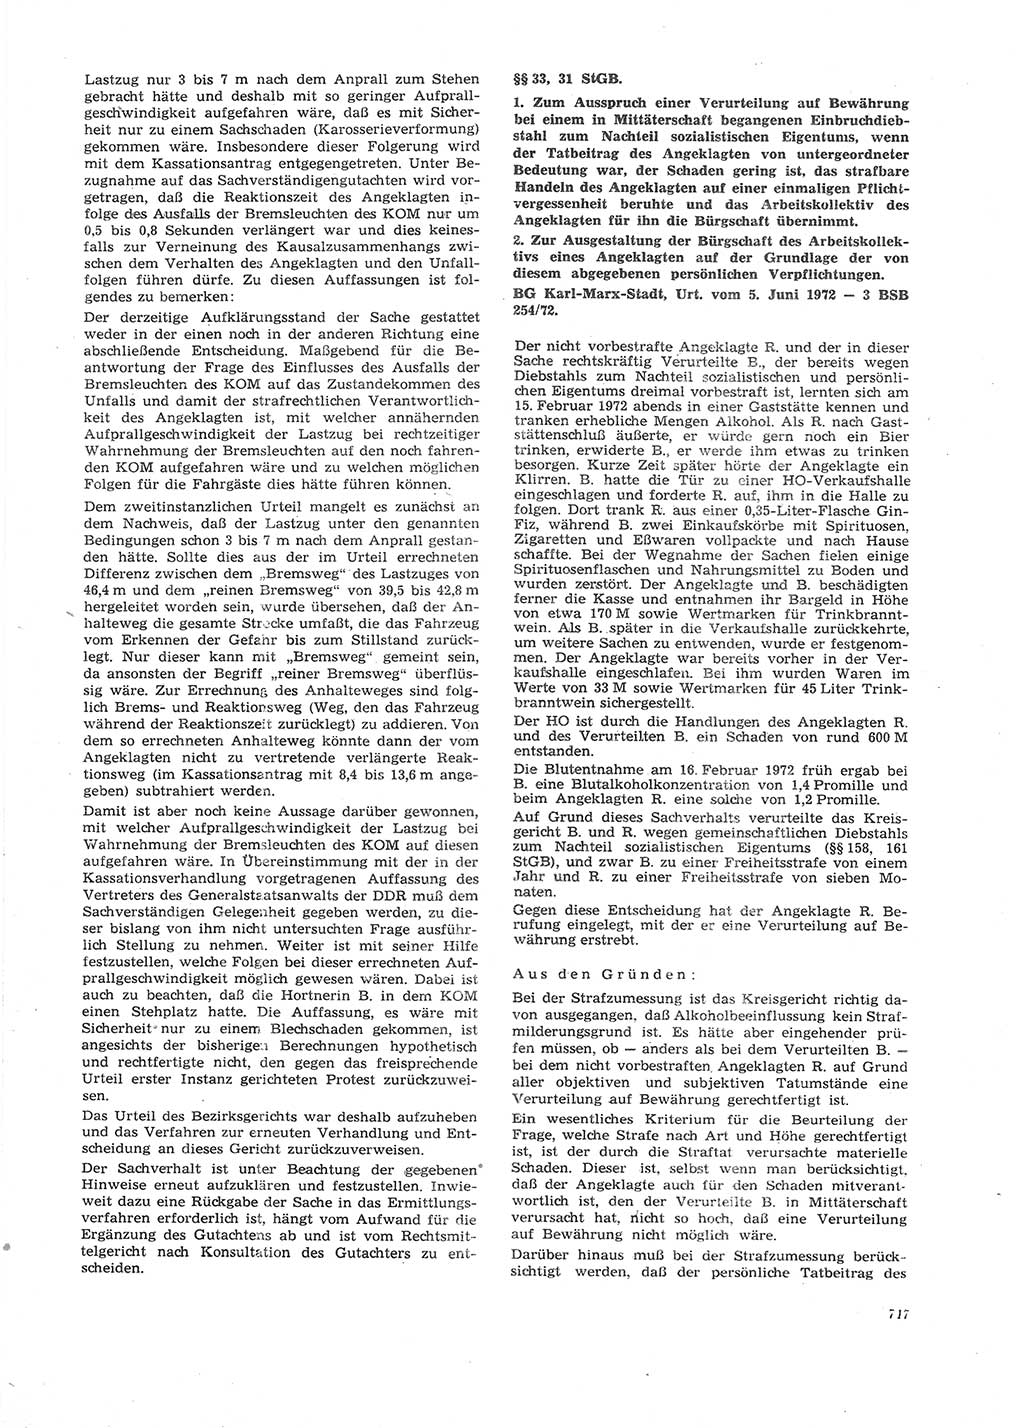 Neue Justiz (NJ), Zeitschrift für Recht und Rechtswissenschaft [Deutsche Demokratische Republik (DDR)], 26. Jahrgang 1972, Seite 717 (NJ DDR 1972, S. 717)